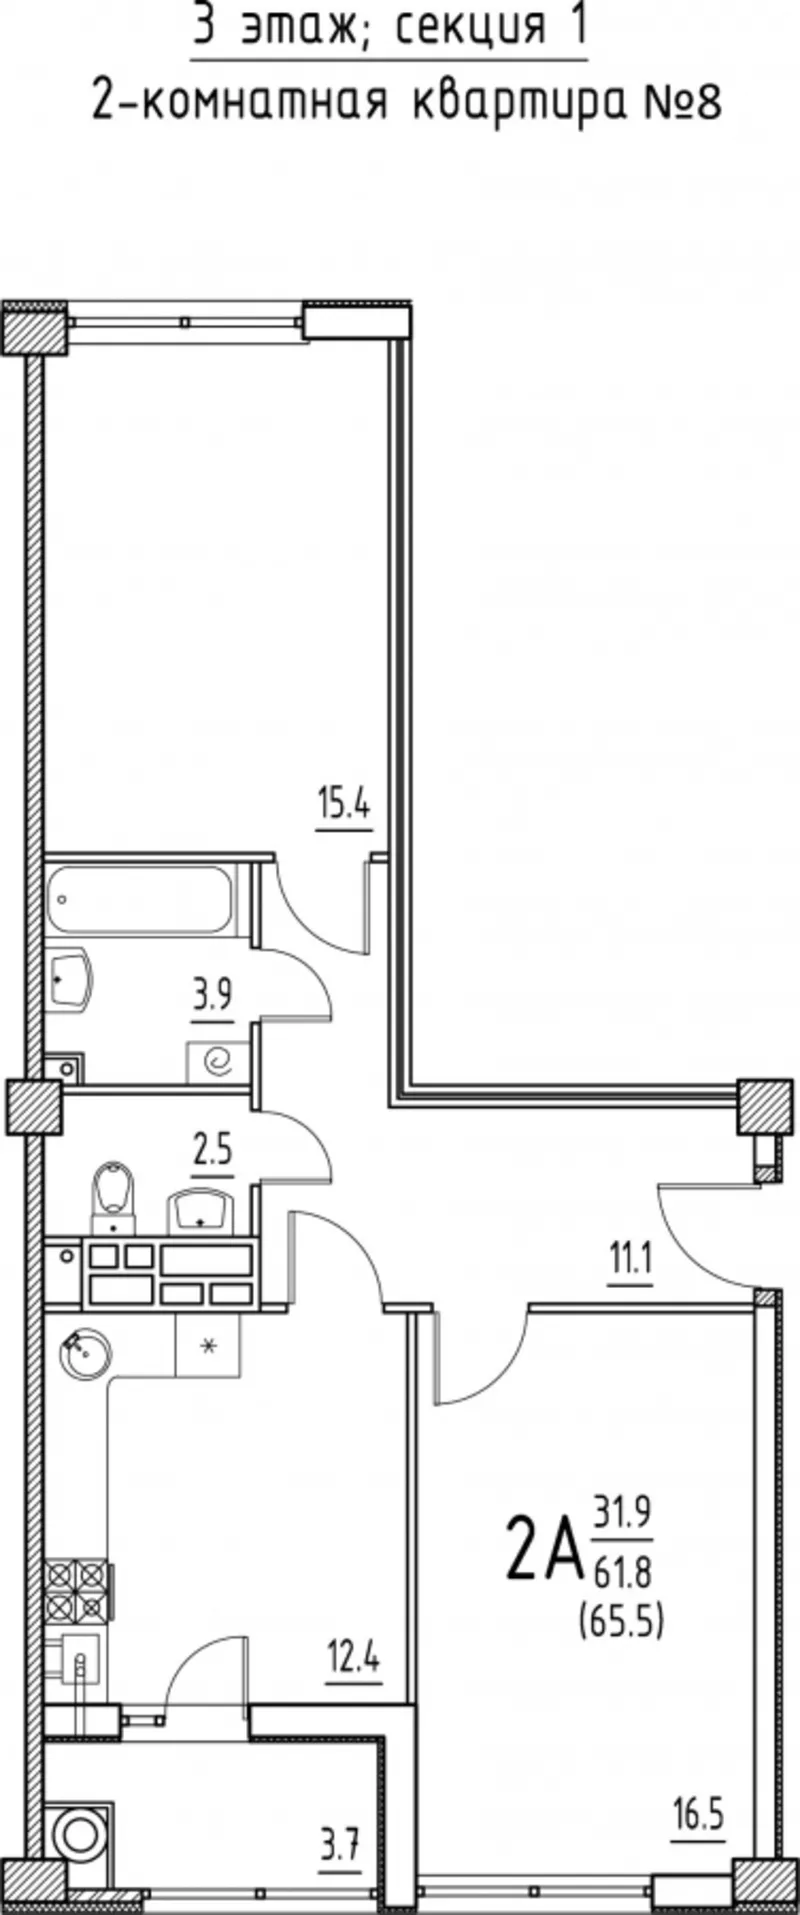 Apartament cu 2 odai 65, 2 m2 - in rate!!! 3